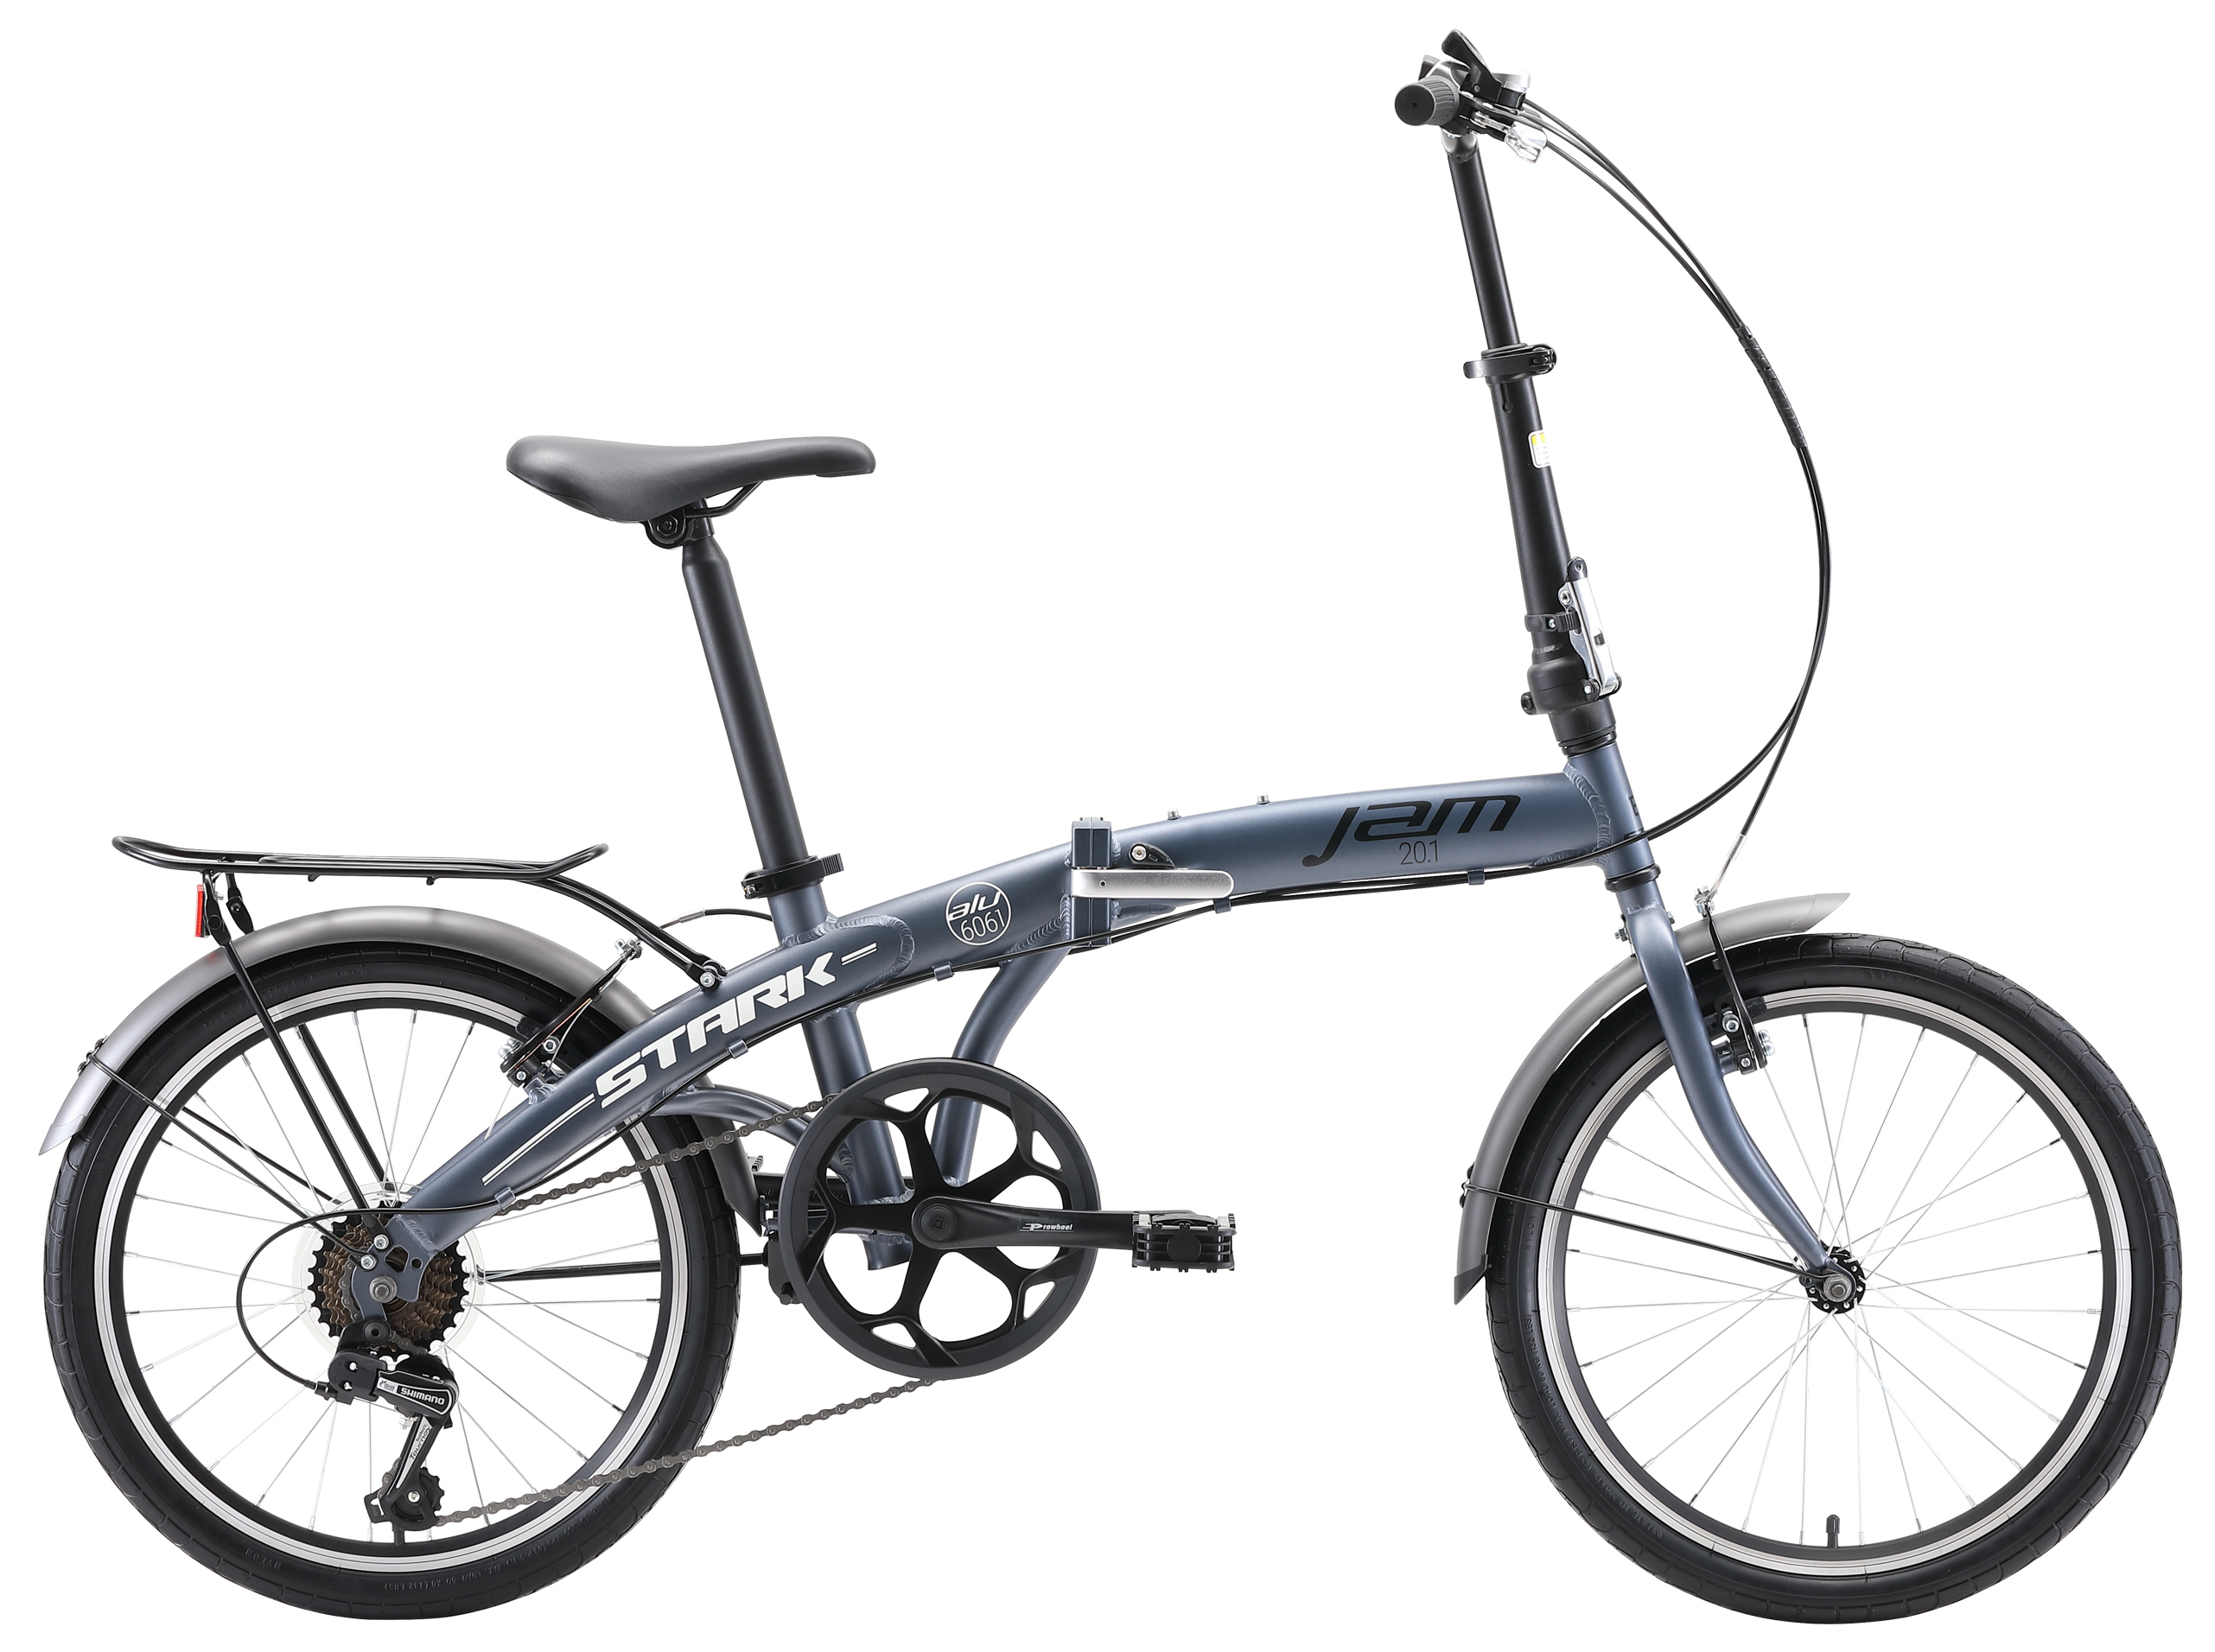  Отзывы о Складном велосипеде Stark Jam 20.1 V 2020